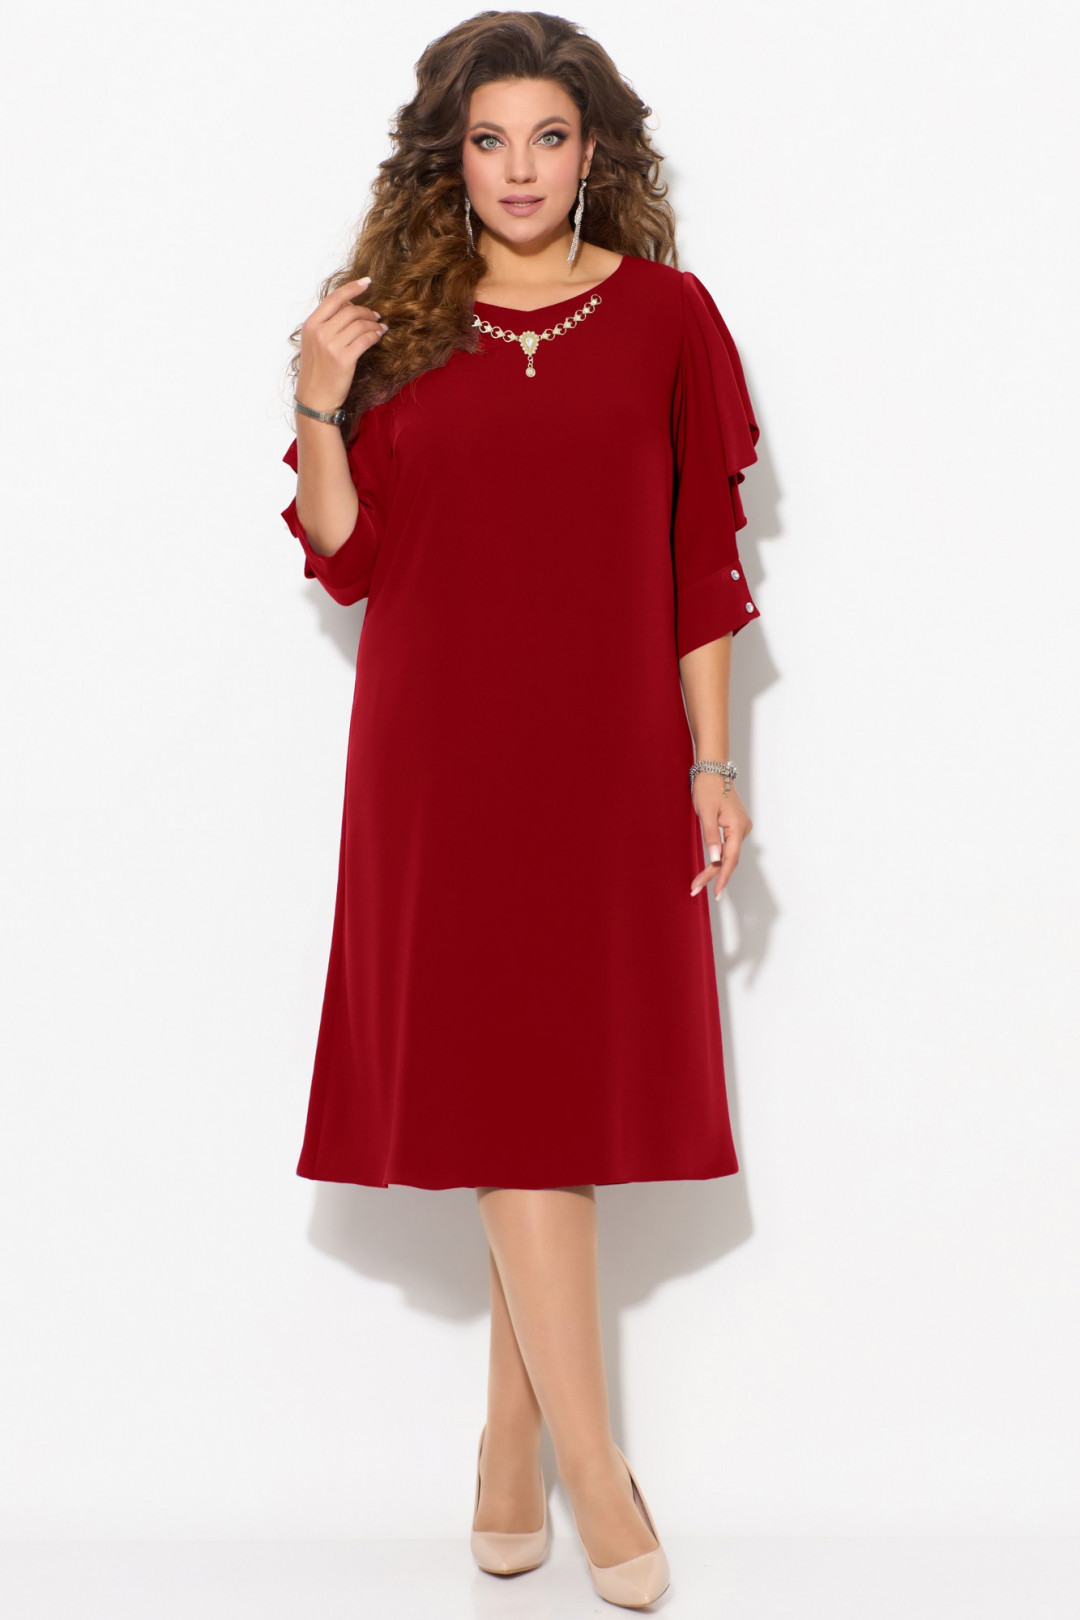 Платье FITA 1403 красно-бордовый